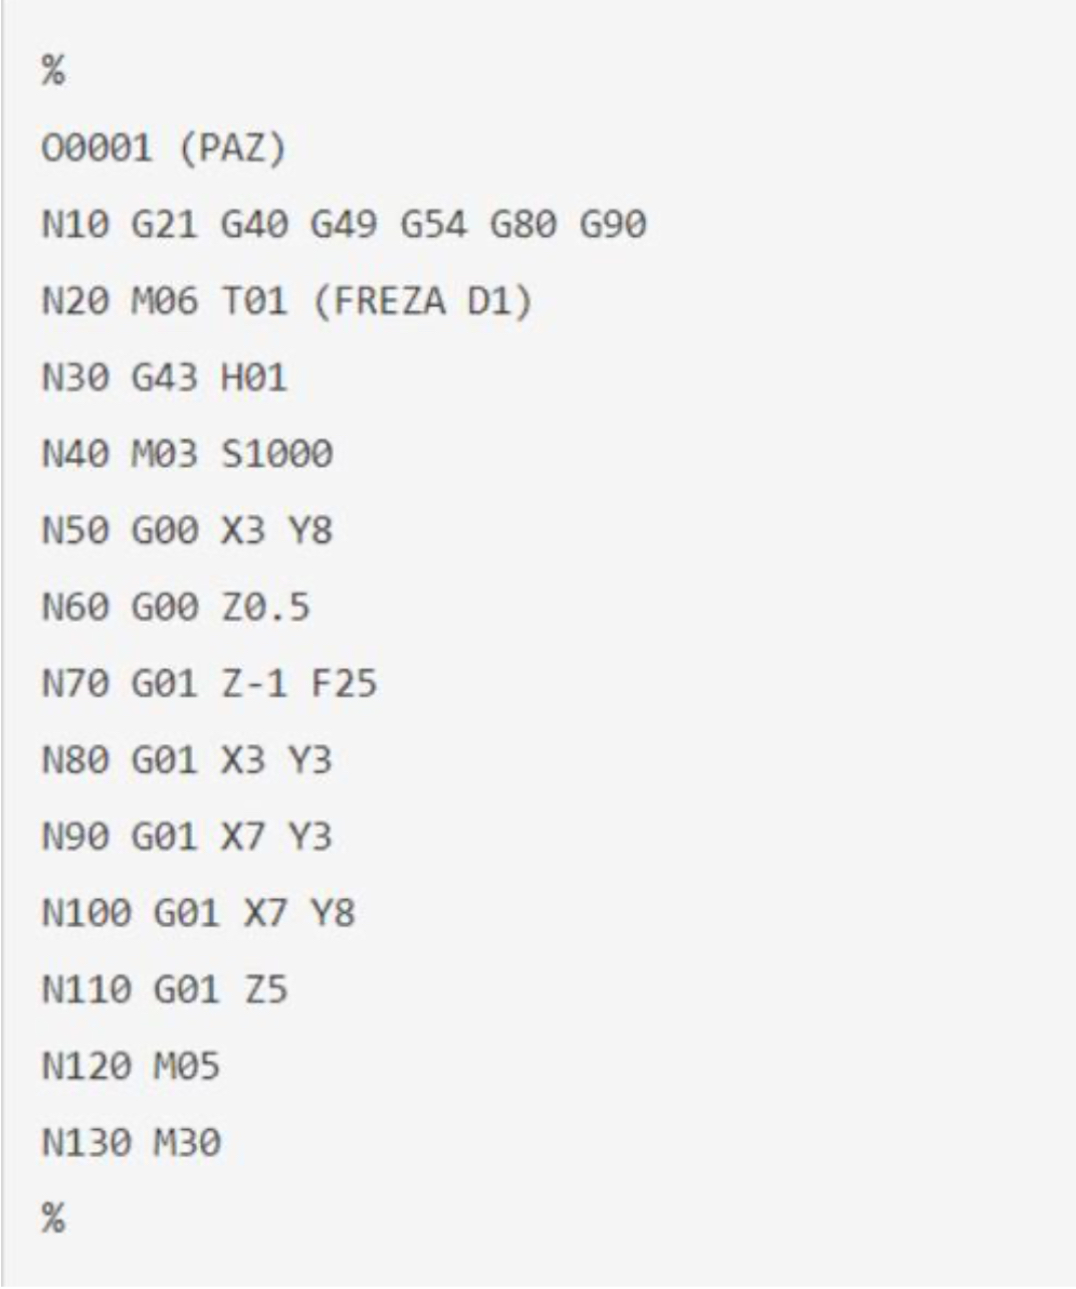 Код м5. G10 код ЧПУ Фанук. G коды Fanuc токарная группа. G И М коды для ЧПУ программирования Фанук. G M коды для станков с ЧПУ Fanuc.